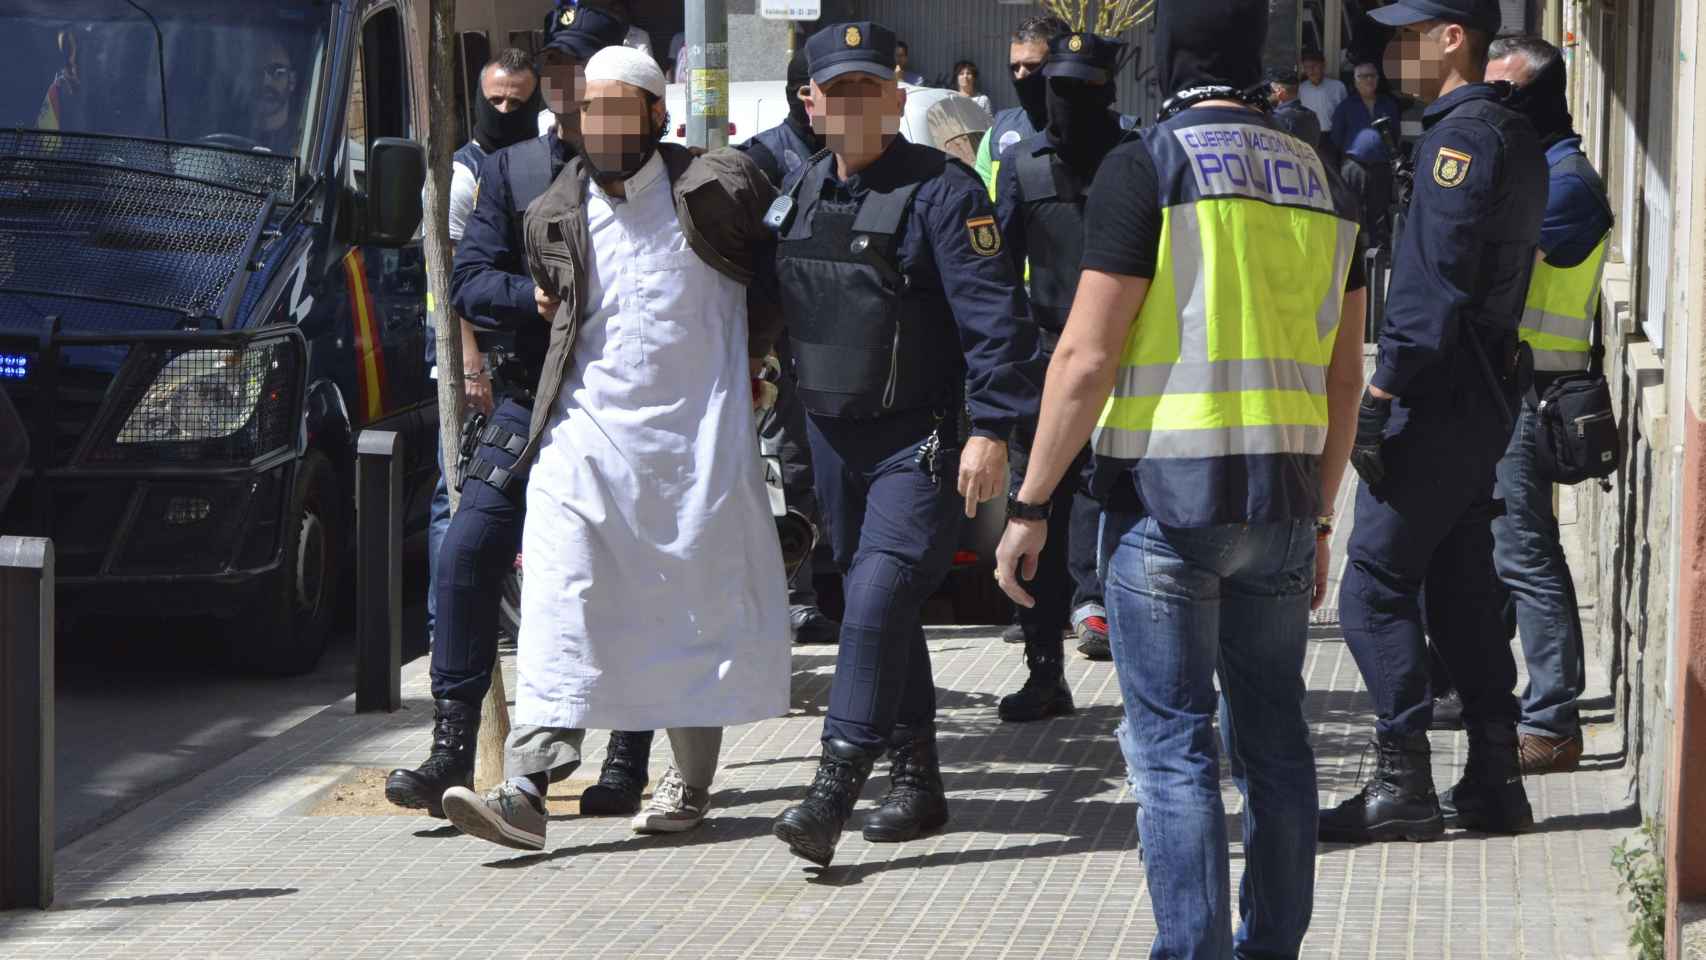 La Policía ha detenido a varios sospechosos de yihadismo en los últimos meses.